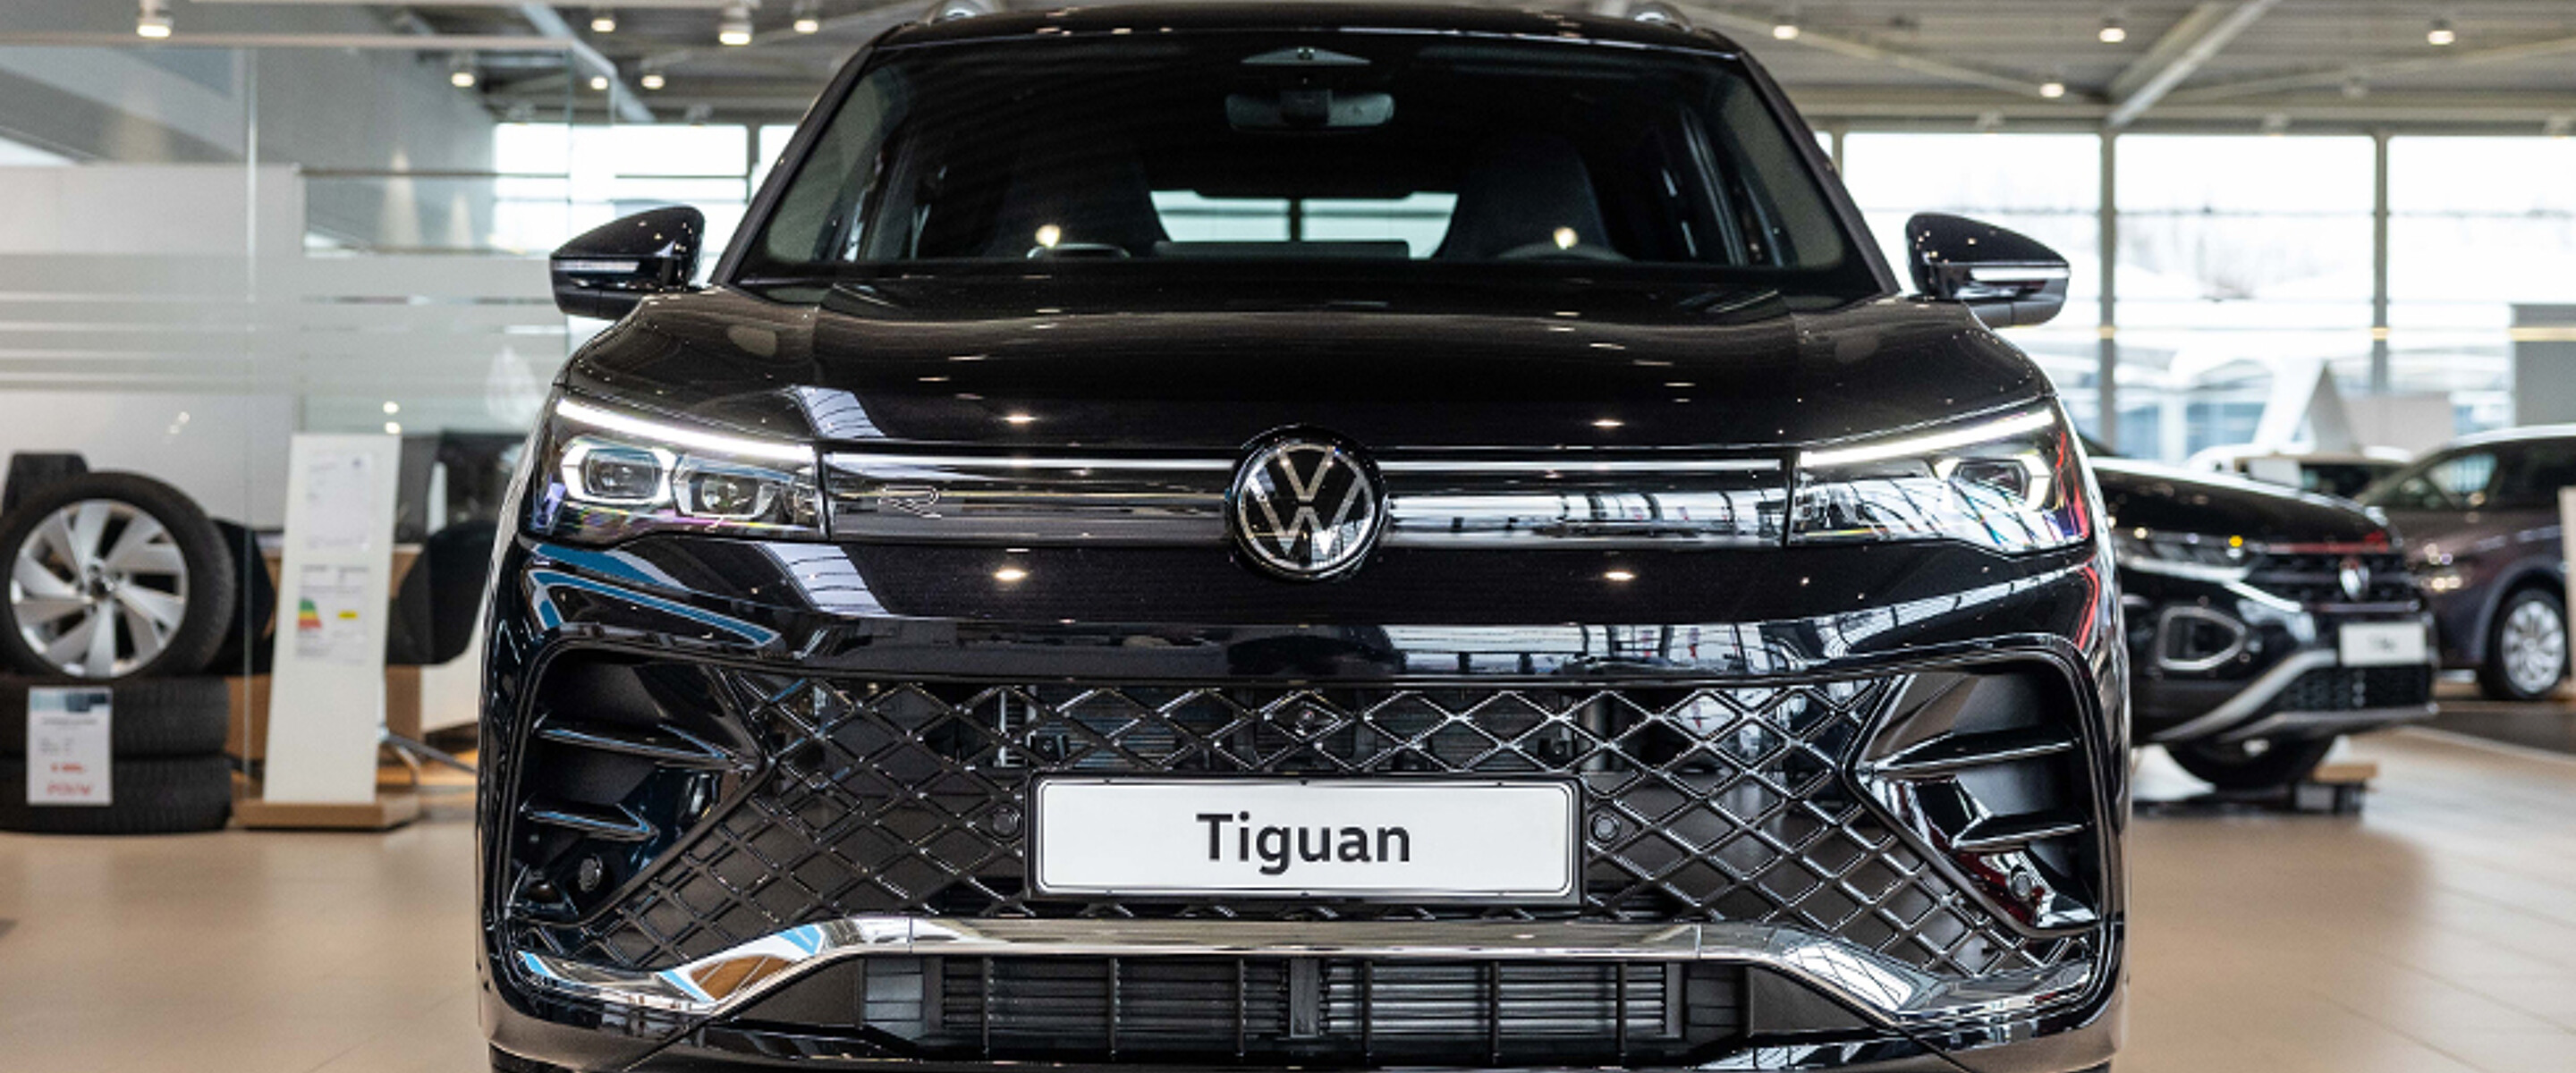 Nieuwe Volkswagen Tiguan bij Pouw_0003_BRP_0473